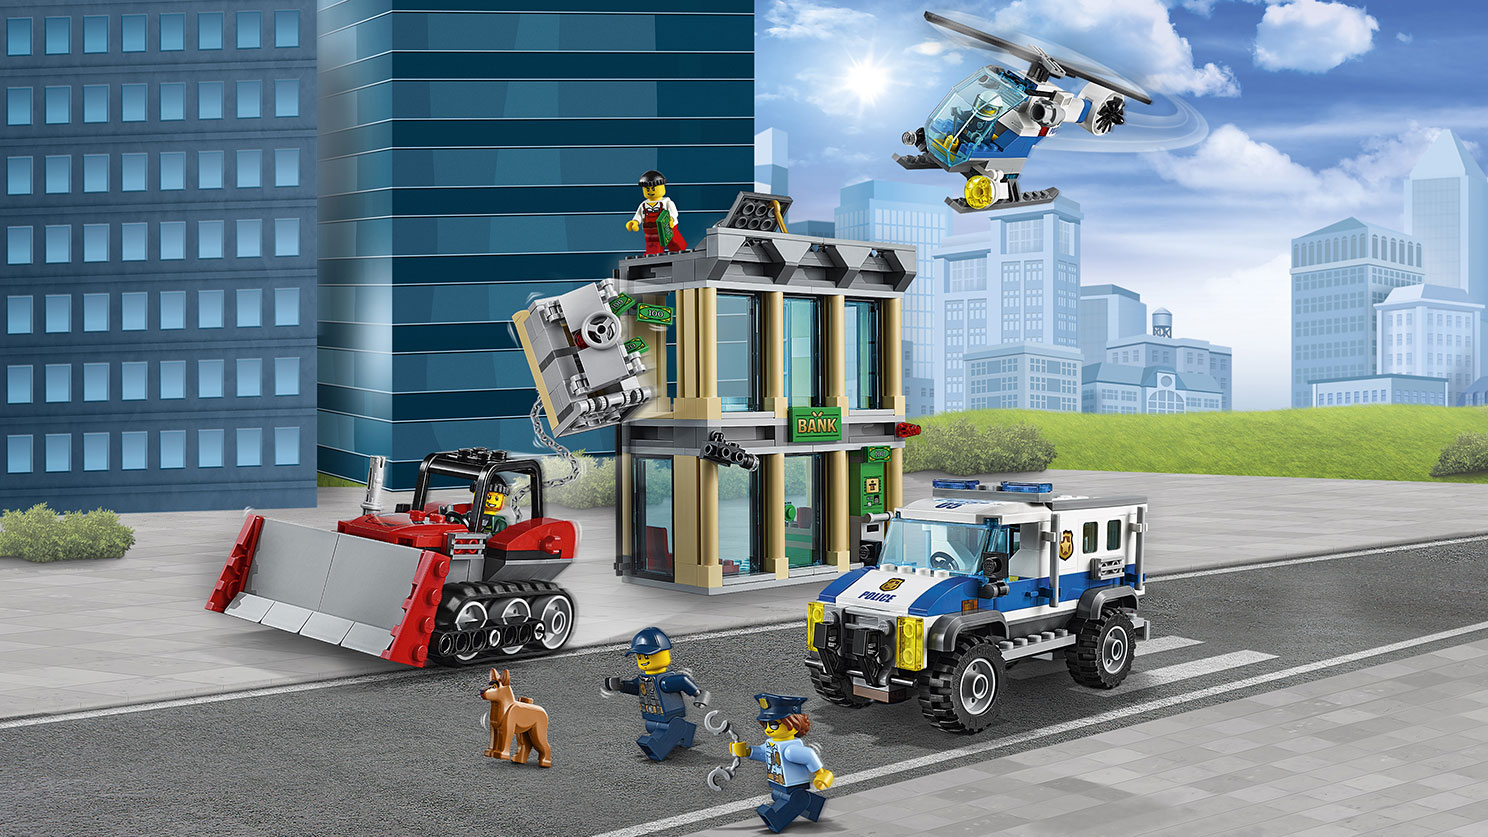 Bulldozer Break-in 60140 - City - LEGO.com for kids